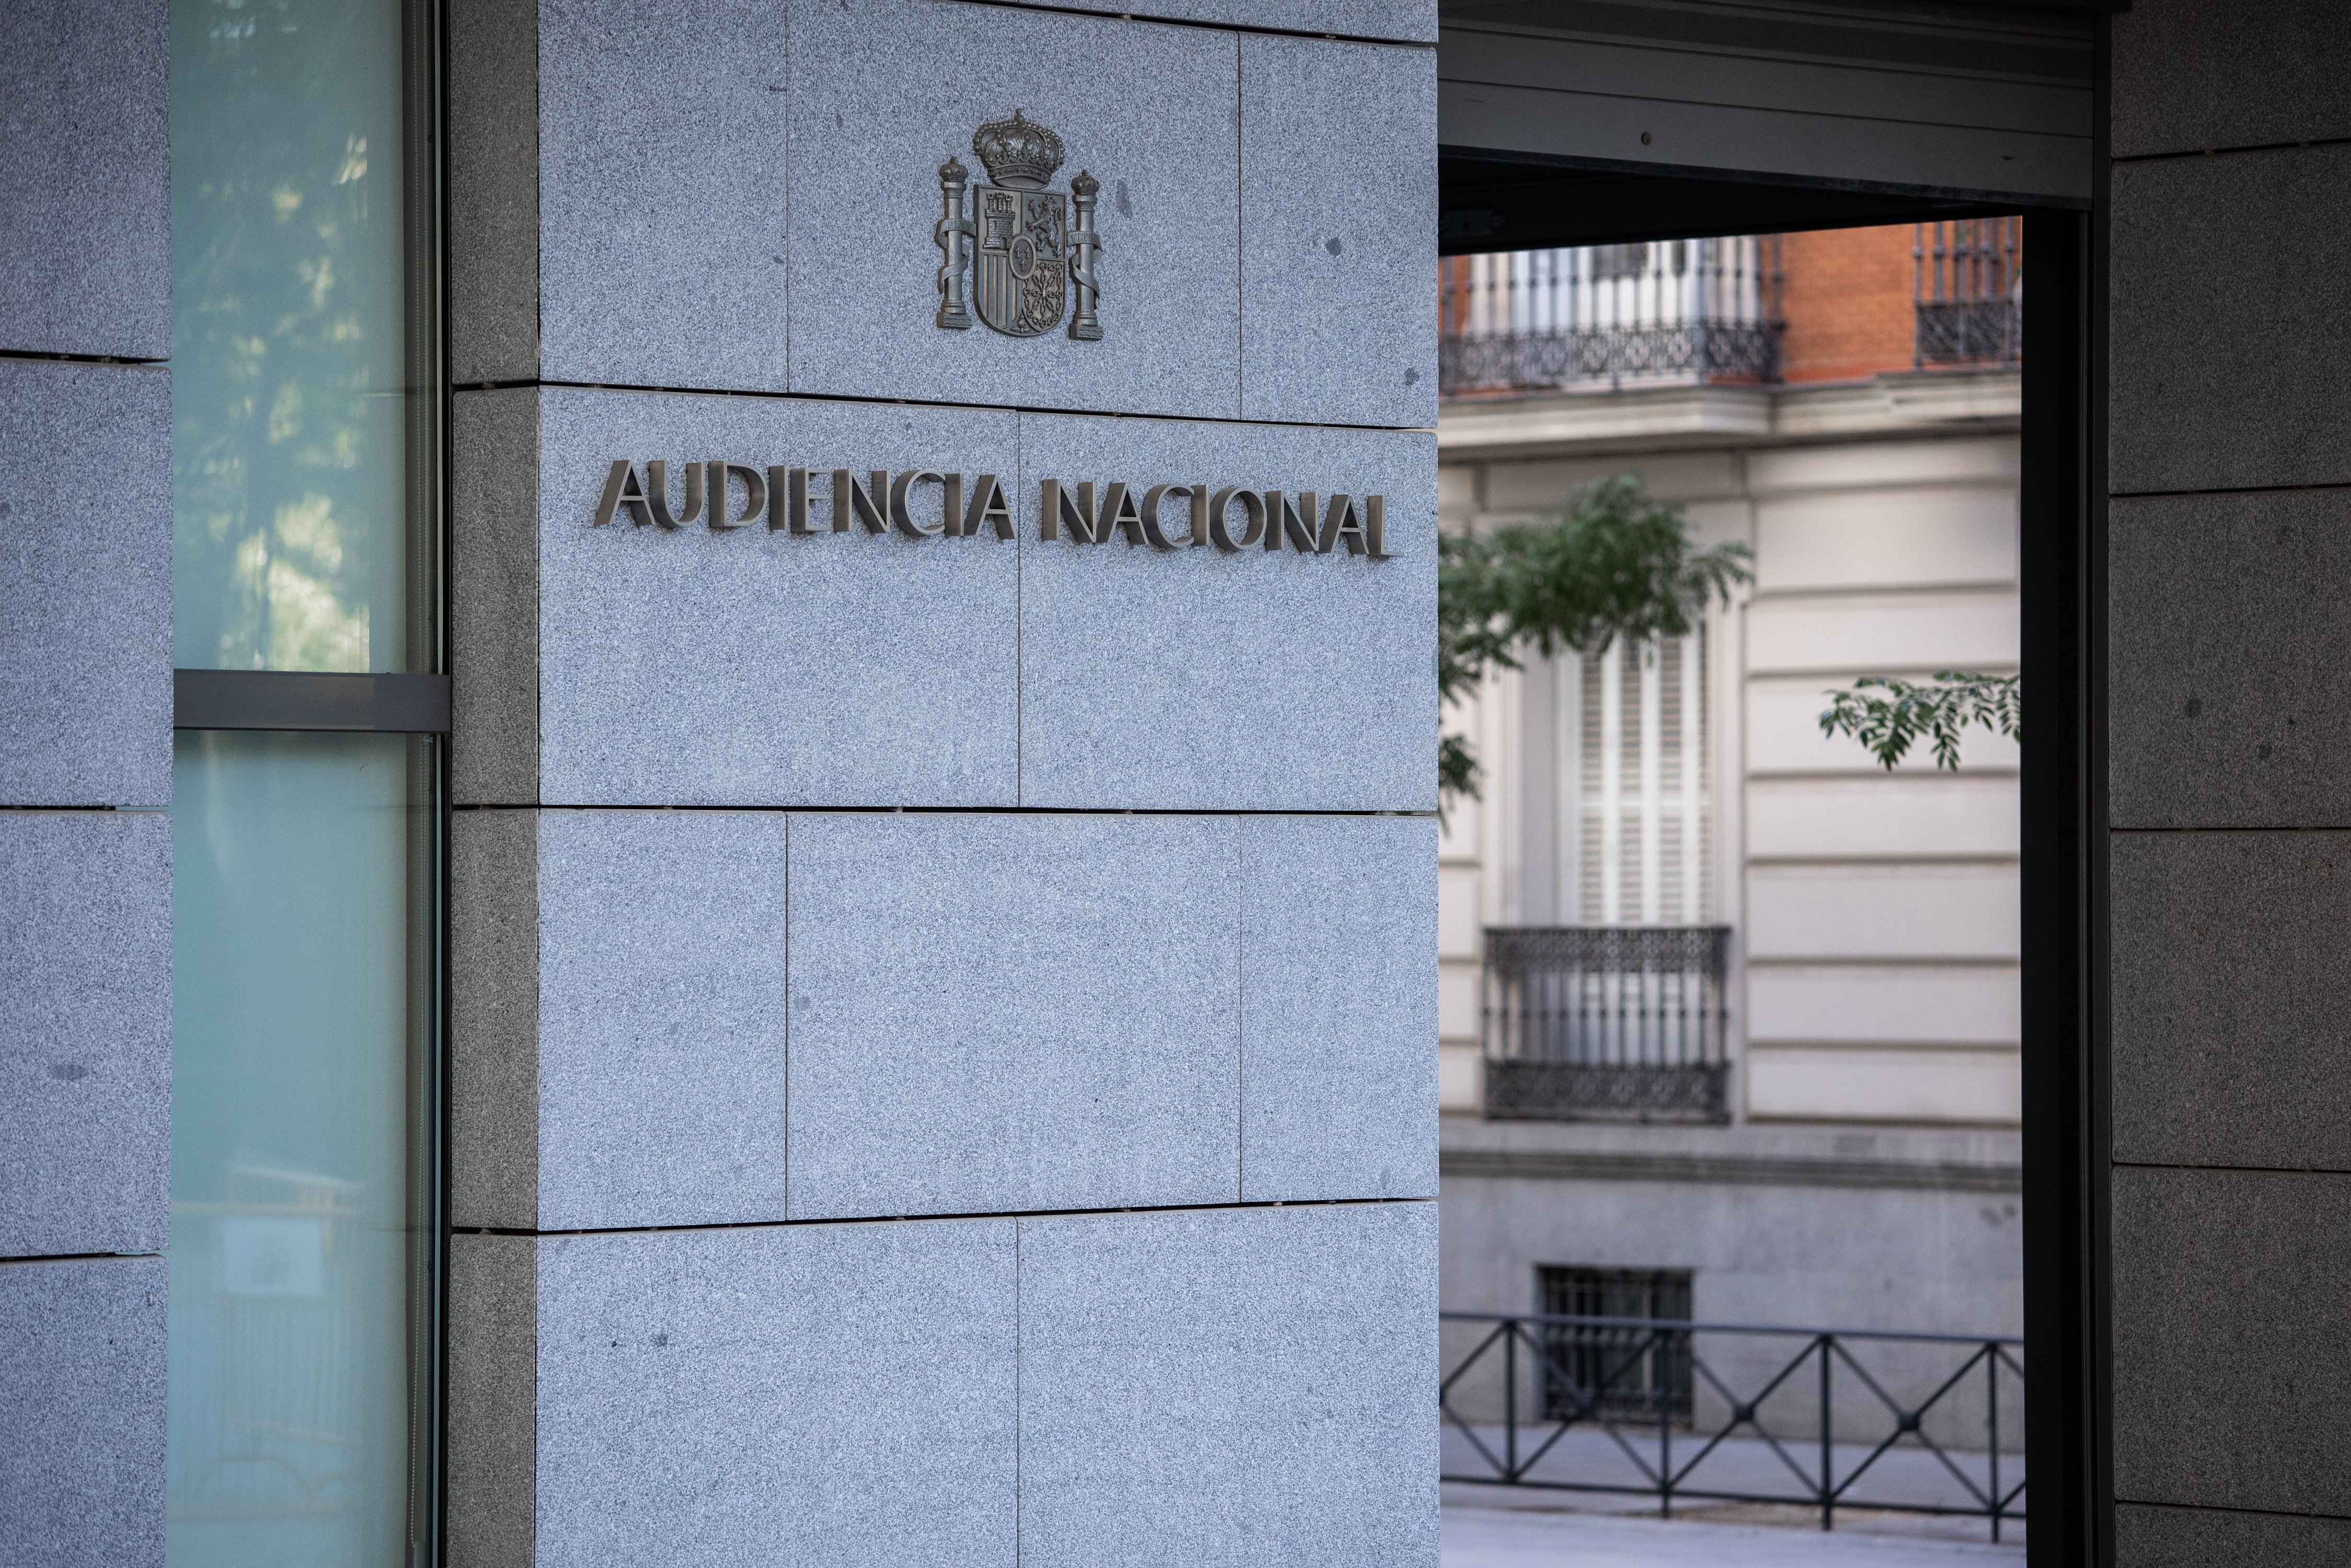 L'Audiència Nacional ja investiga l'espionatge a Pedro Sánchez i Margarita Robles amb Pegasus